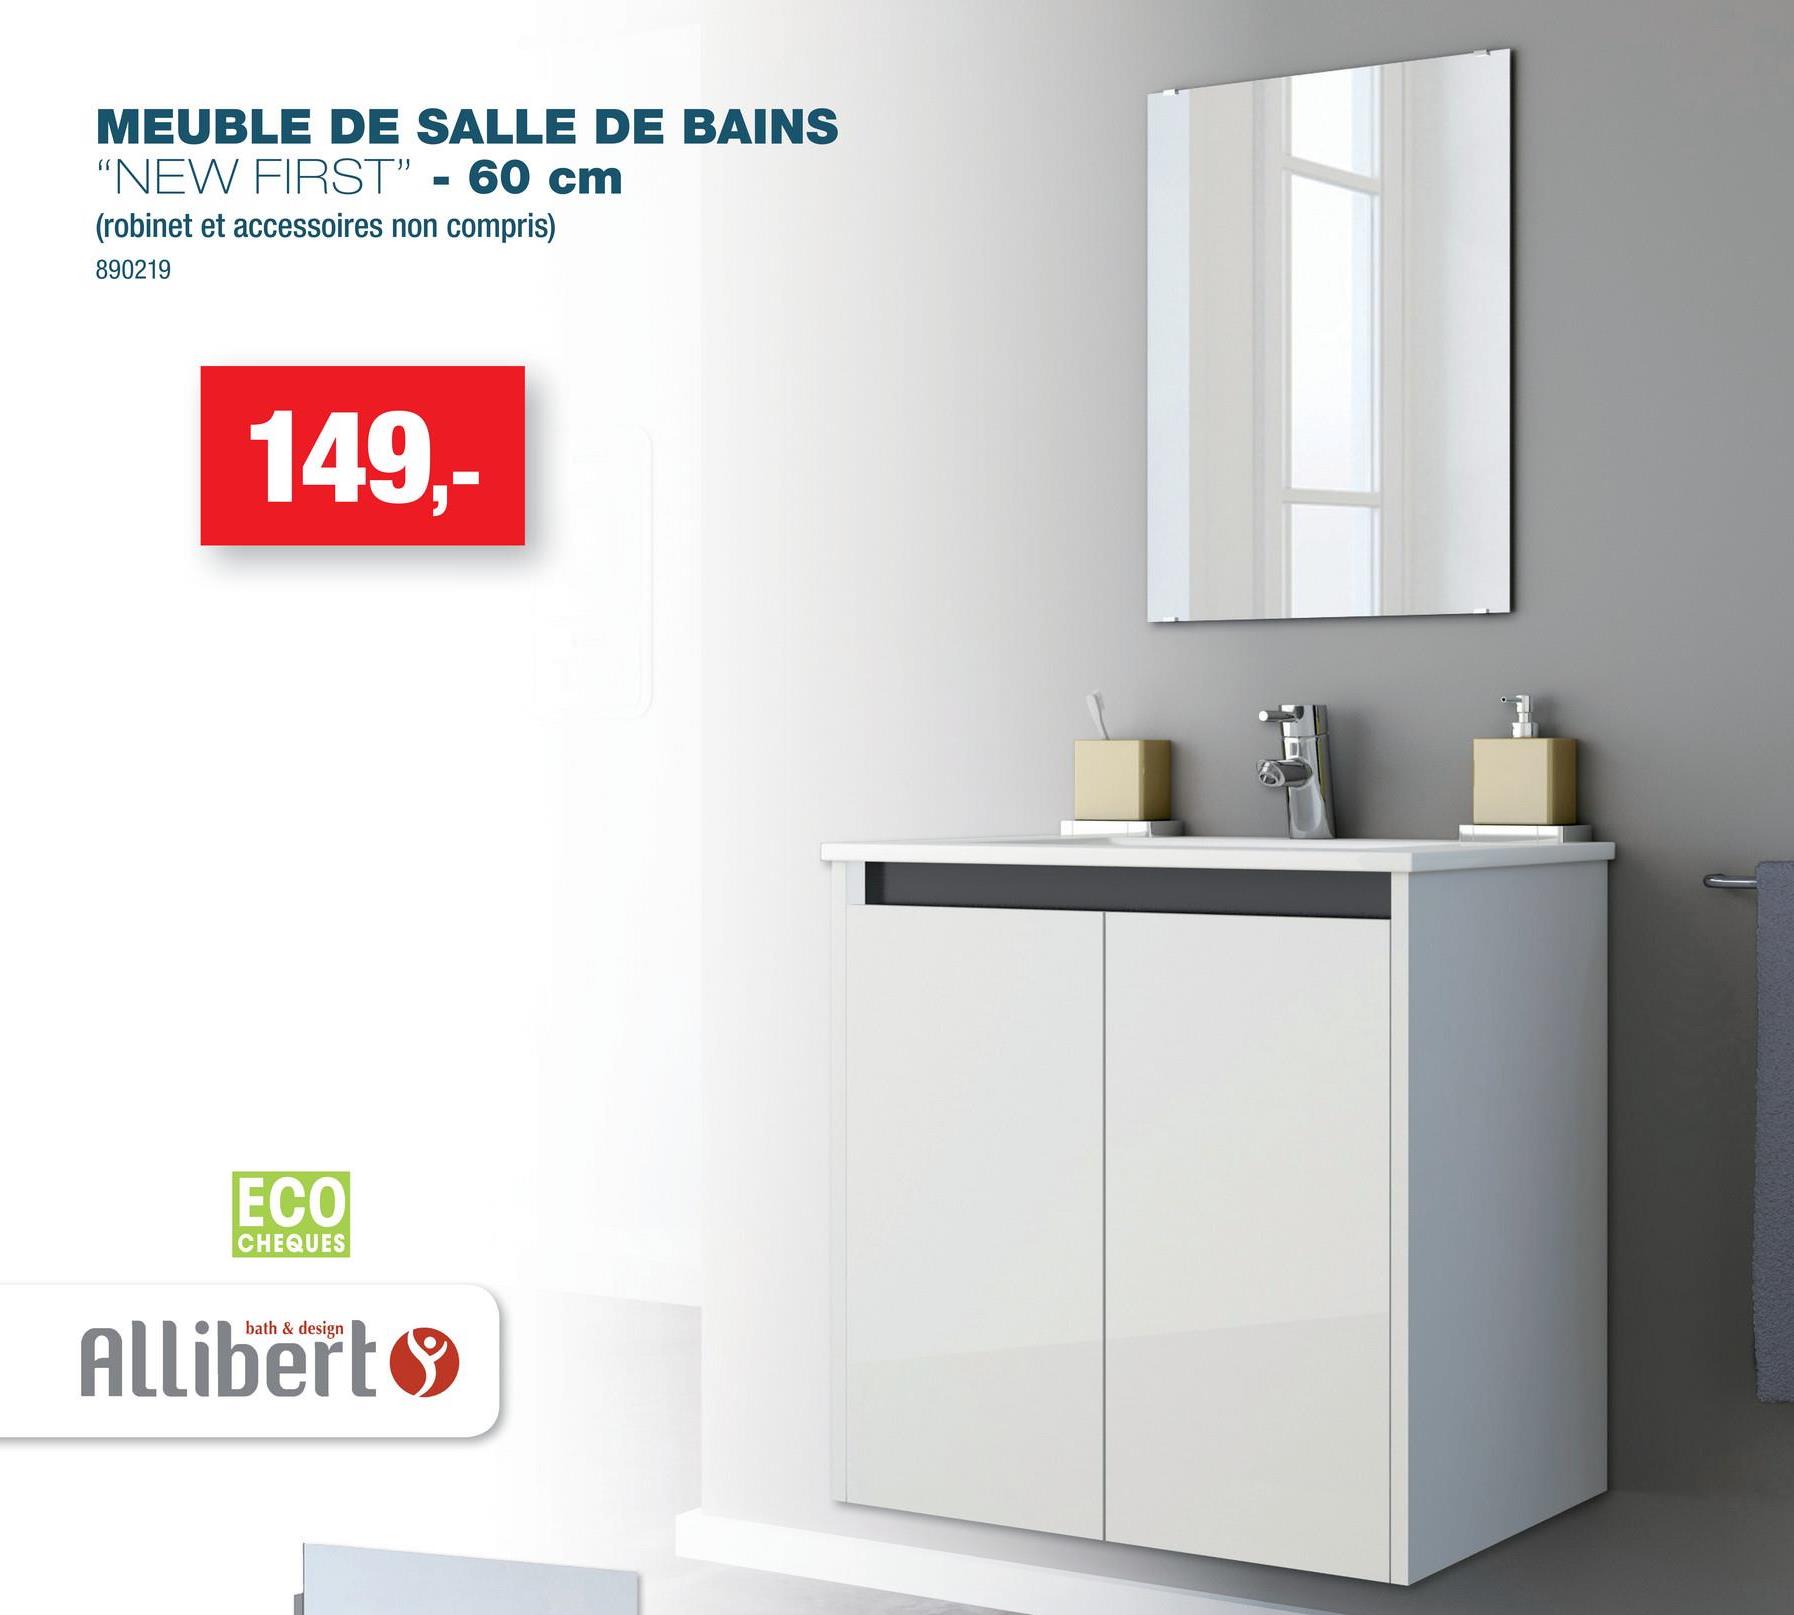 MEUBLE DE SALLE DE BAINS
"NEW FIRST" - 60 cm
(robinet et accessoires non compris)
890219
149,-
ECO
CHEQUES
bath & design
Allibert